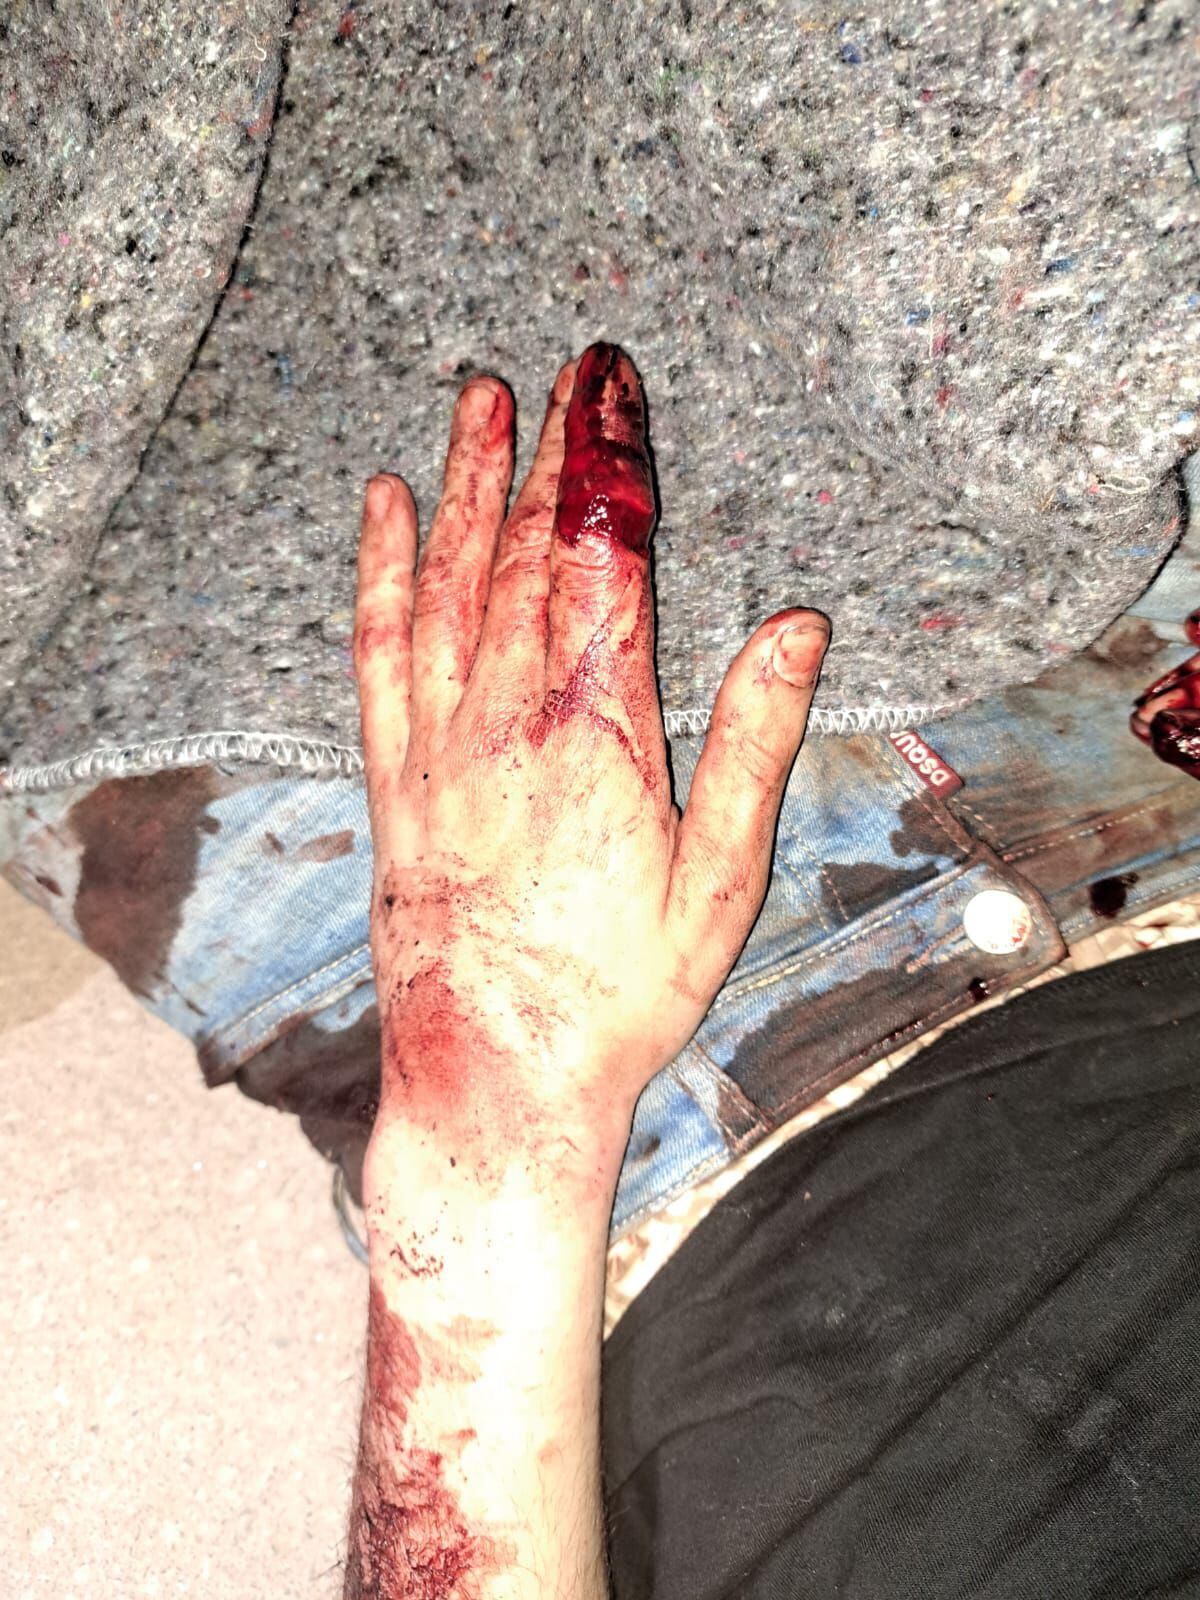 Así quedó la mano izquierda del hombre que logró huir en Marbella tras ser torturado. Foto facilitada por la Policía Nacional.